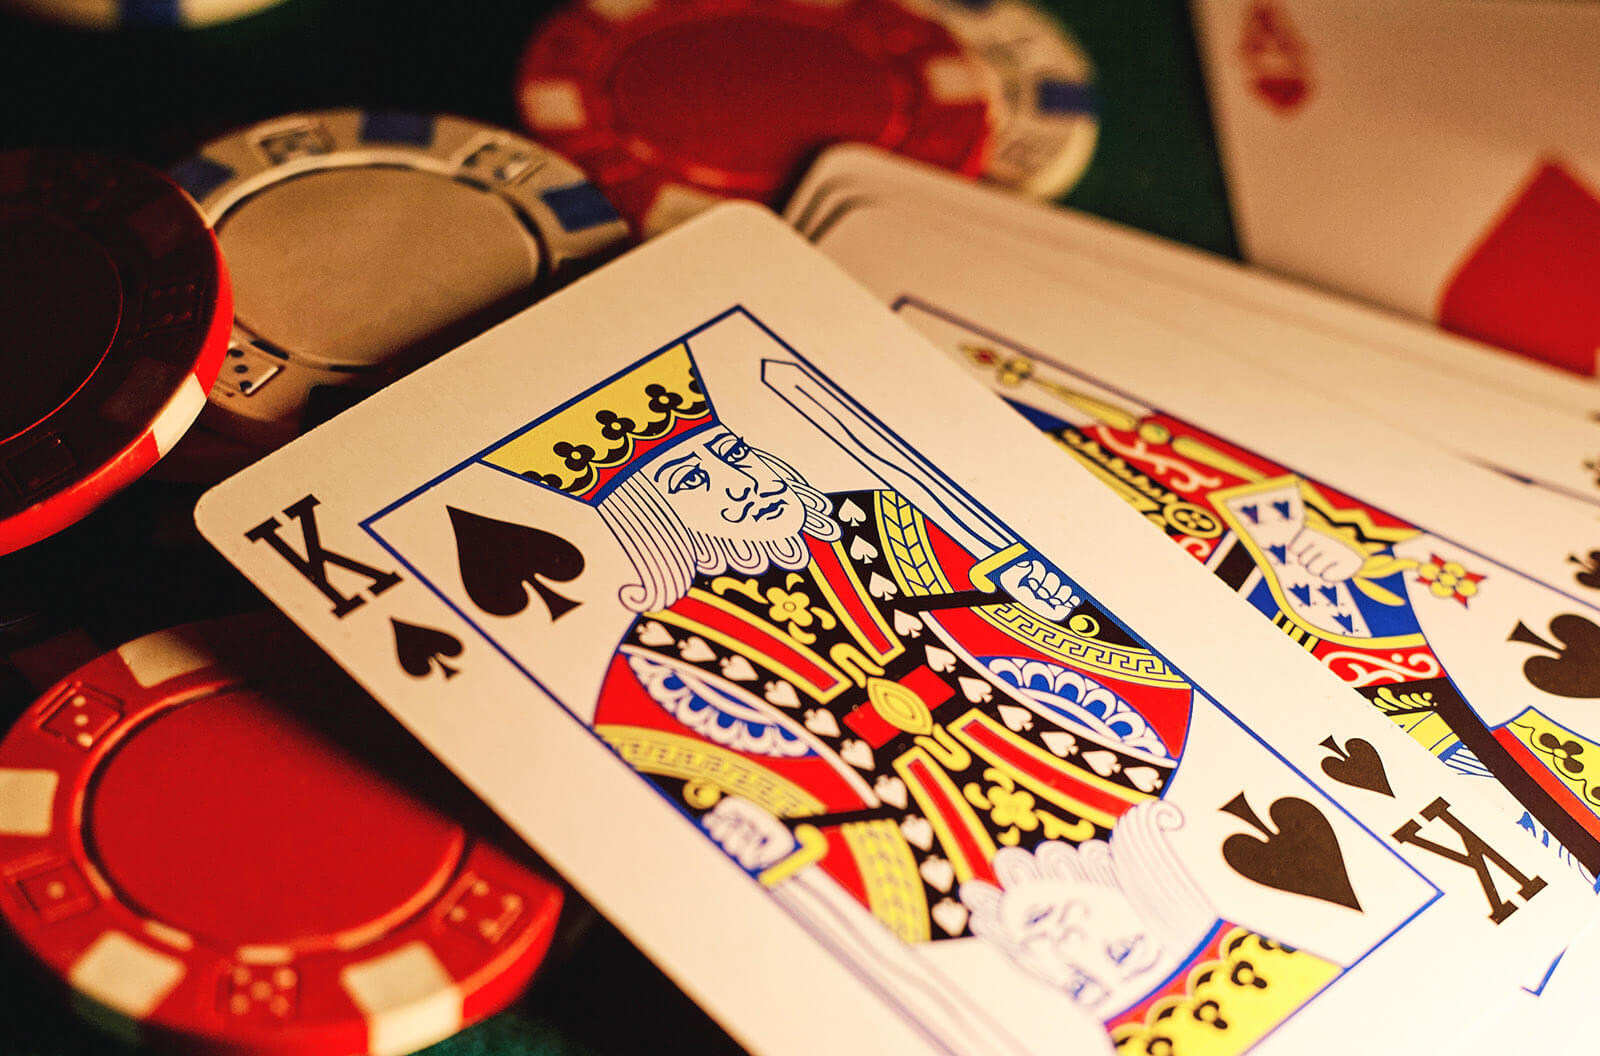 Gambling Casino Card Game King of Spades